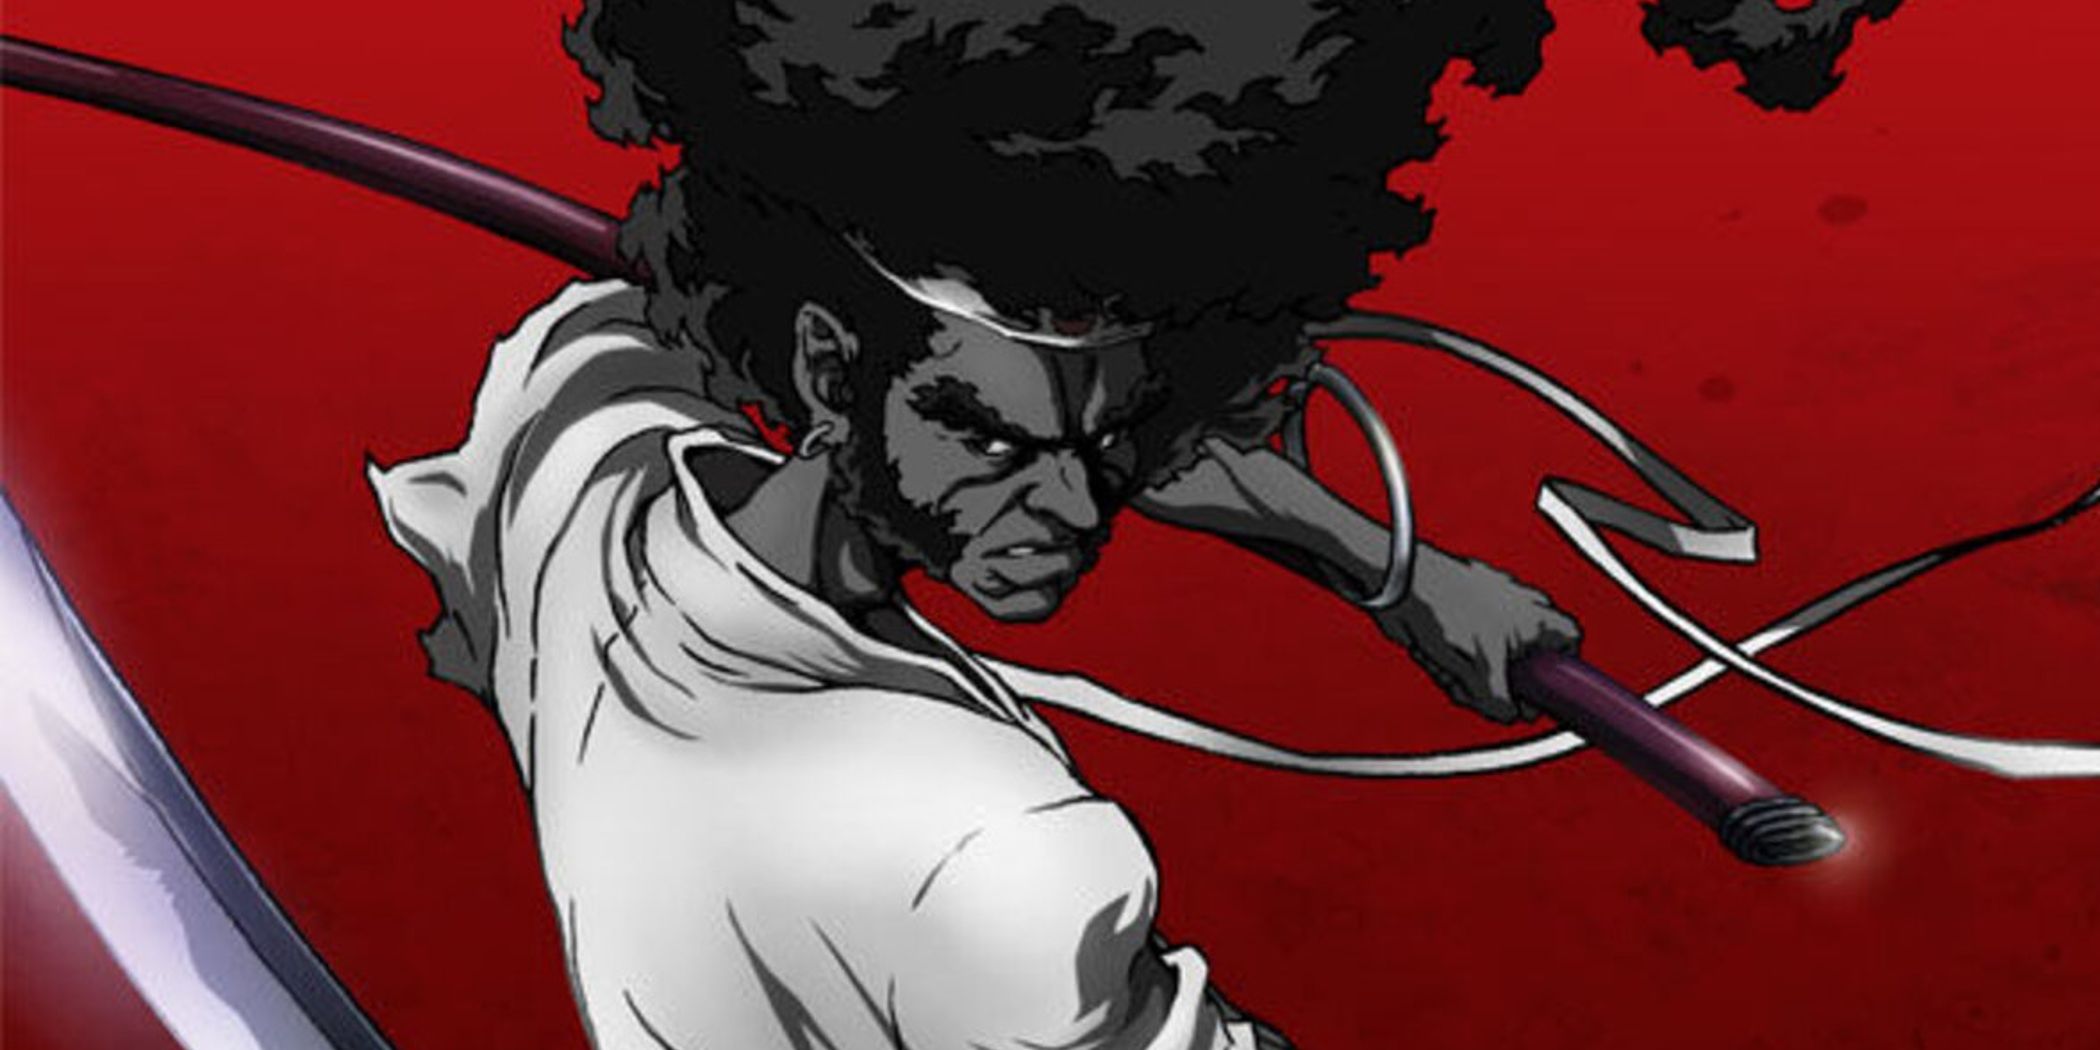 Afro Samurai empunhando suas espadas contra um fundo vermelho escuro.